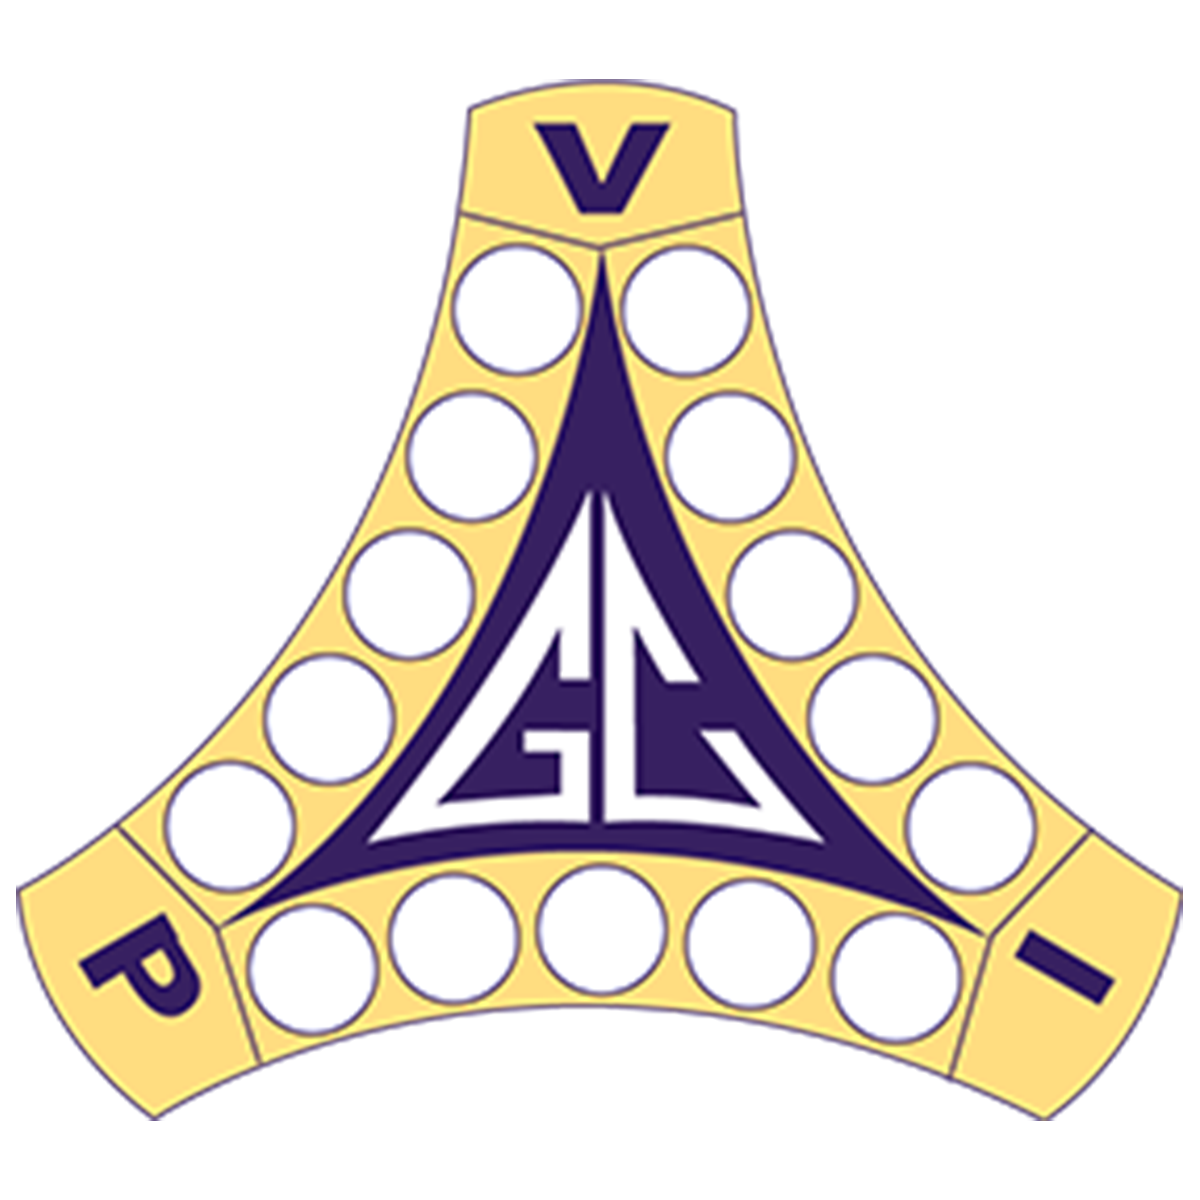 German Club Logo